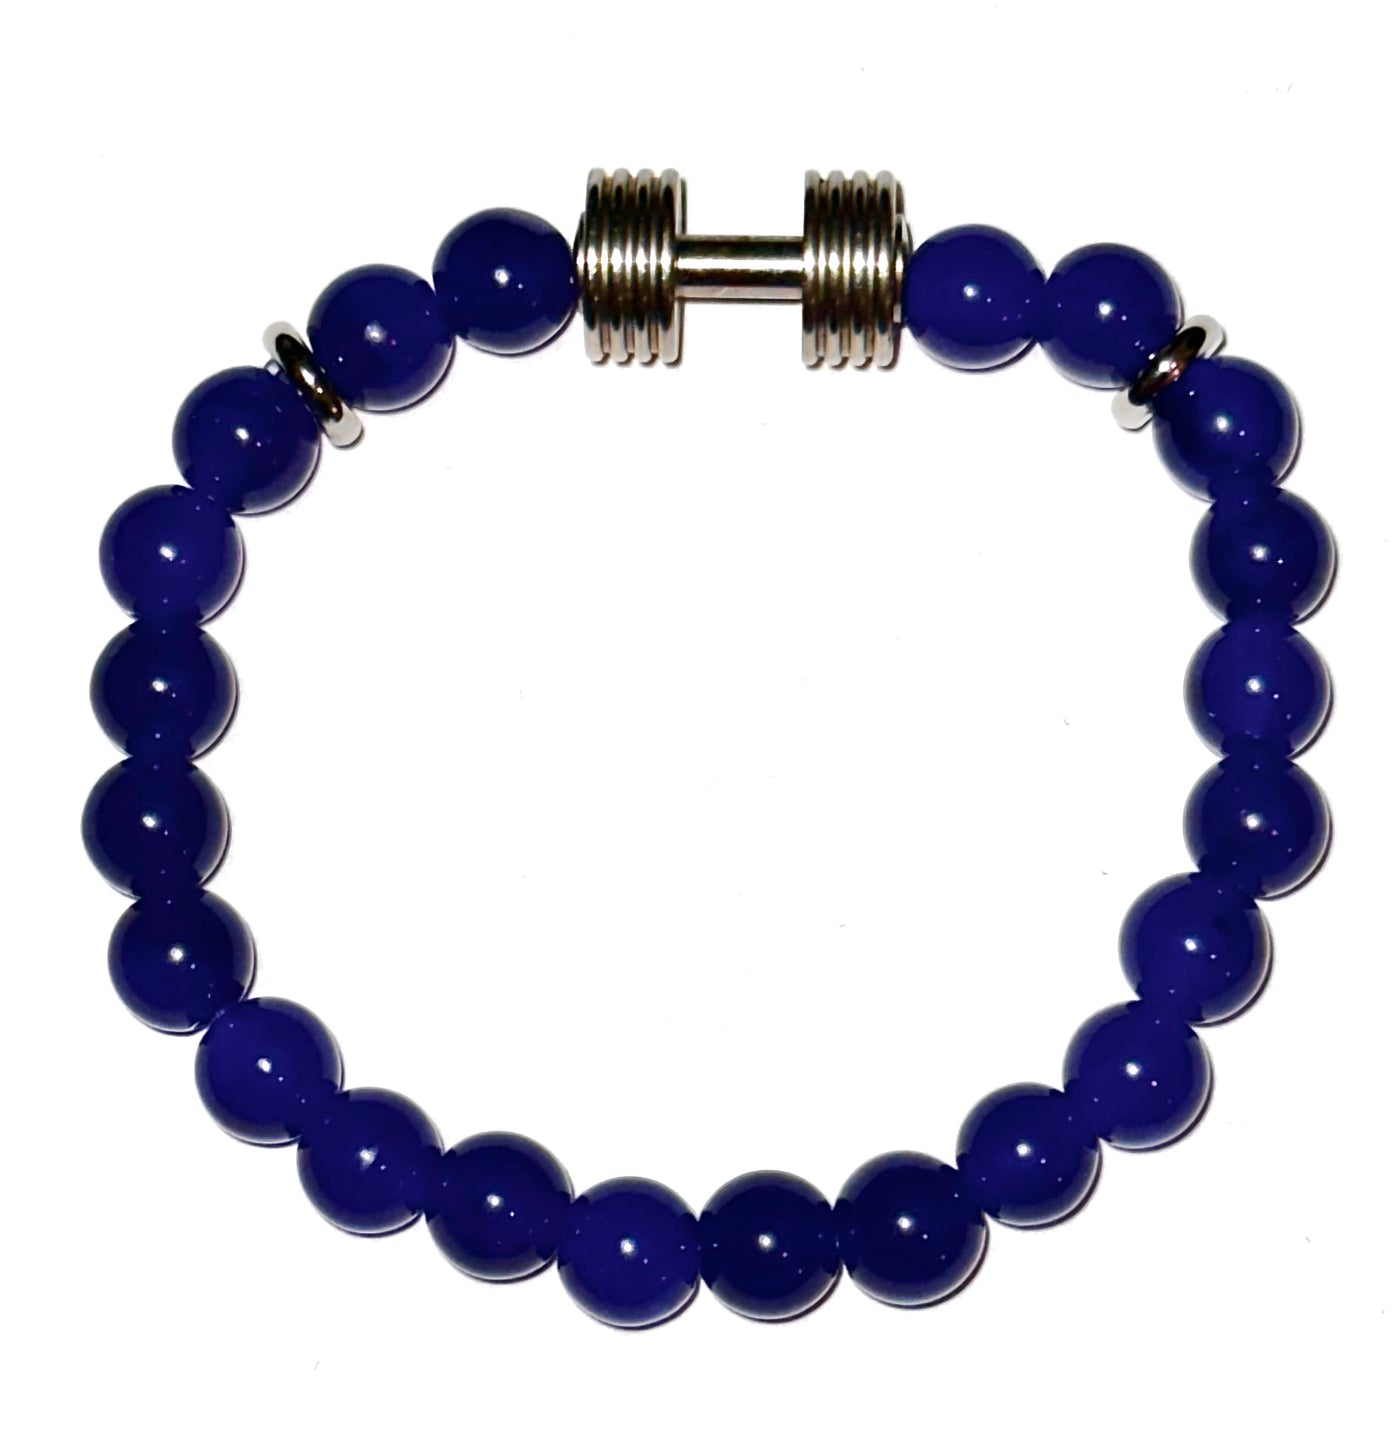 Dumbbell Bracelet with Navy Blue Beads - Brent's Bling